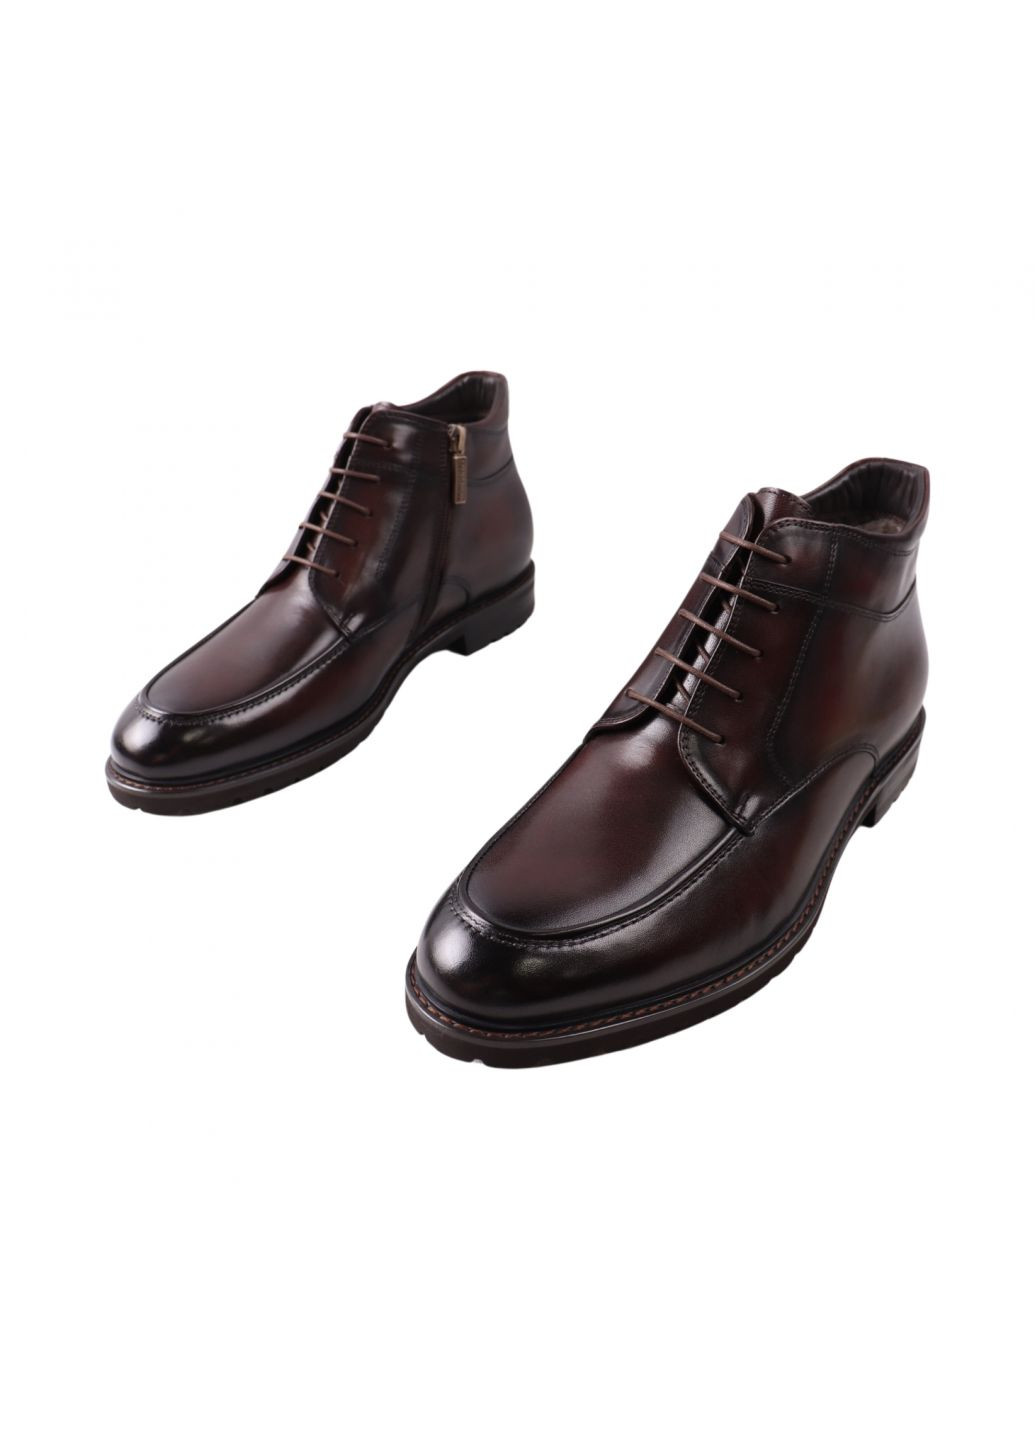 Коричневые ботинки мужские lido marinozi кабировые натуральная кожа Lido Marinozzi